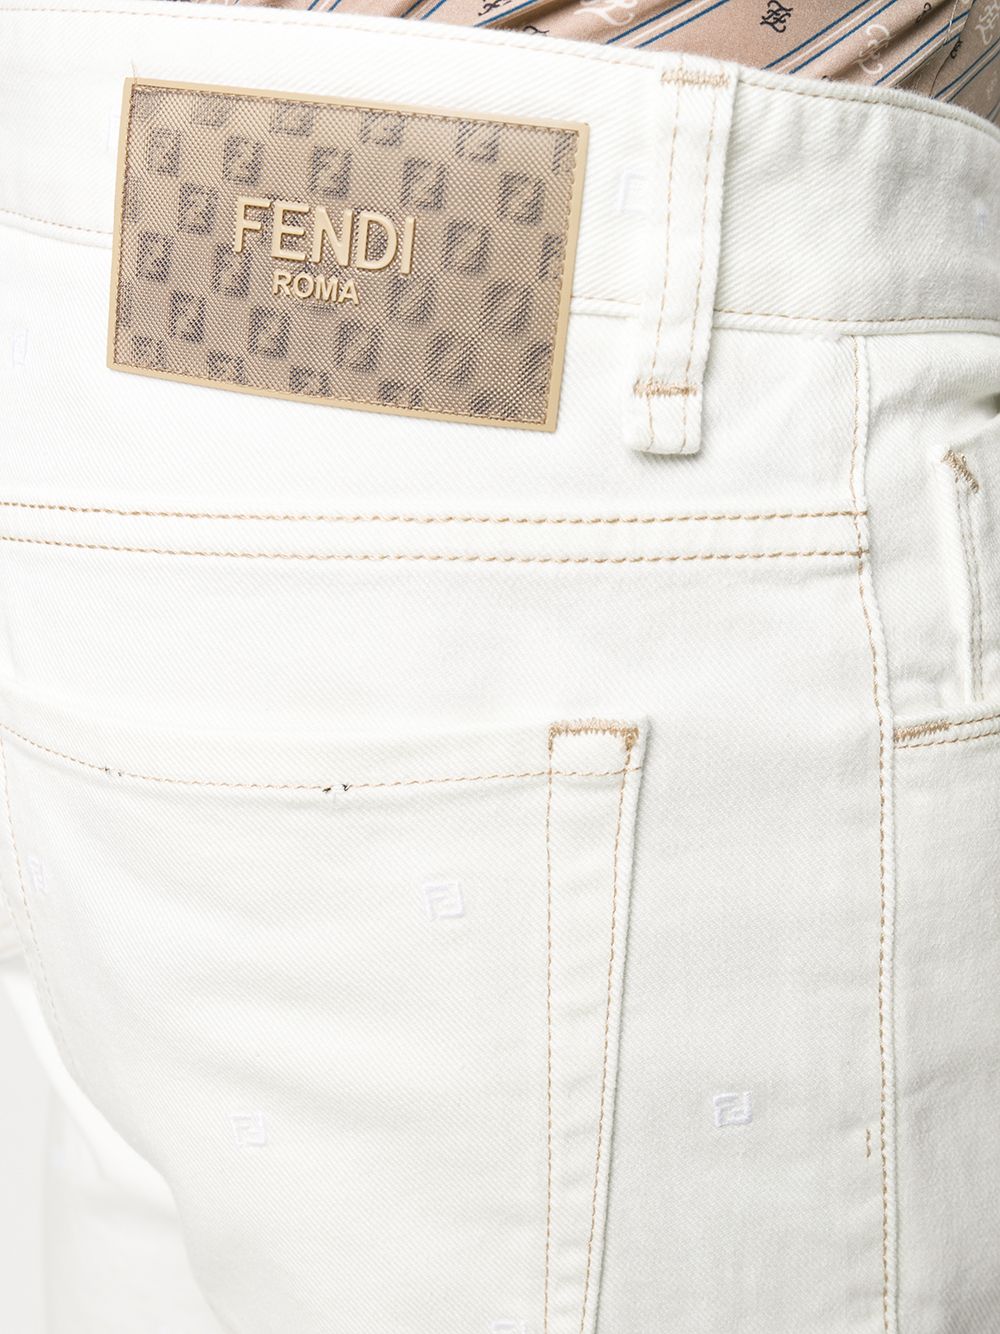 фото Fendi прямые джинсы кроя слим